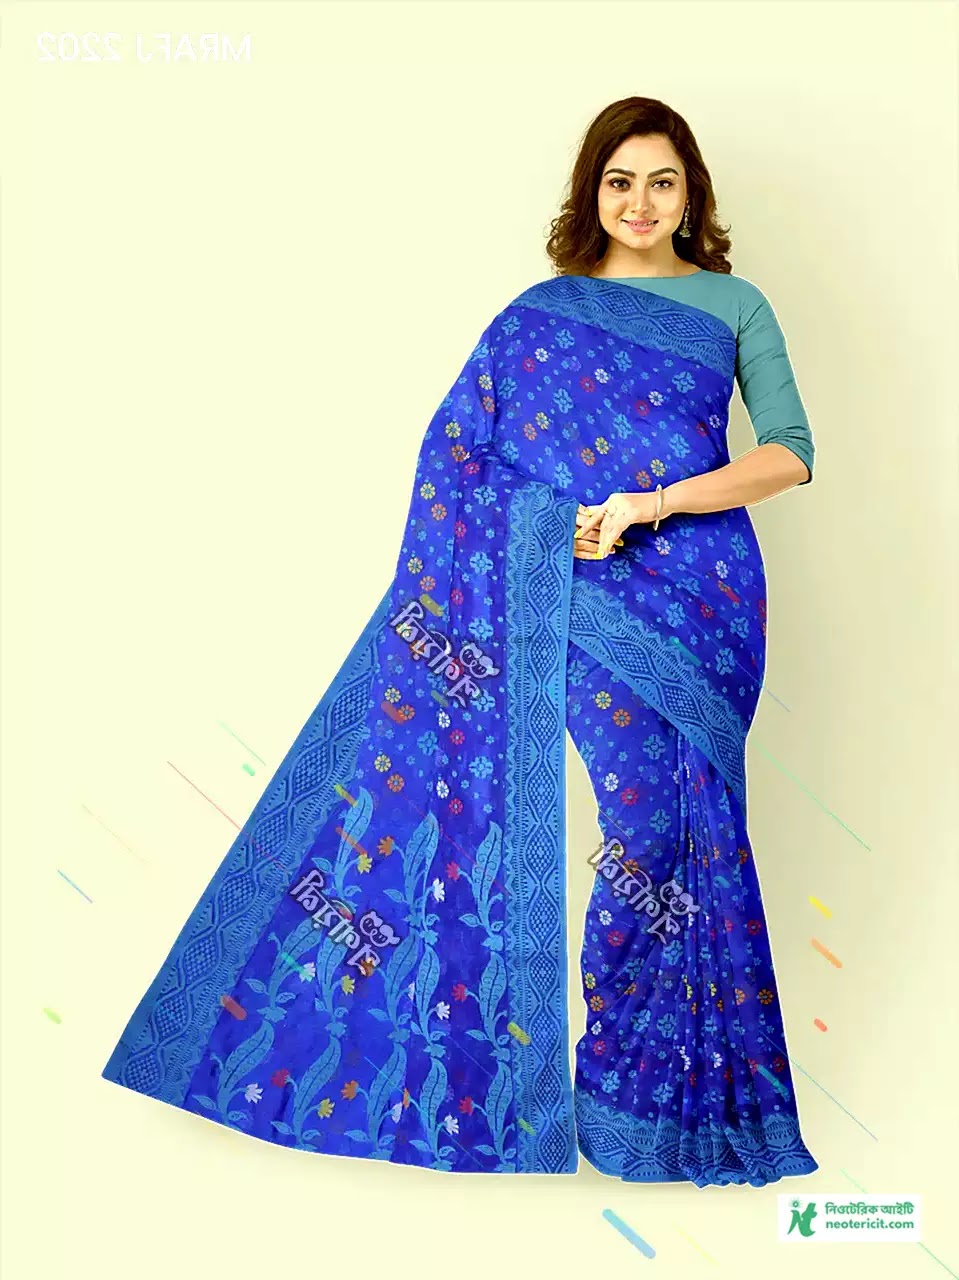 Blue Saree Designs - Blue Saree Pics, Photos, Pictures - Blue Saree Designs & Prices - blue saree pic - NeotericIT.com - Image no 12